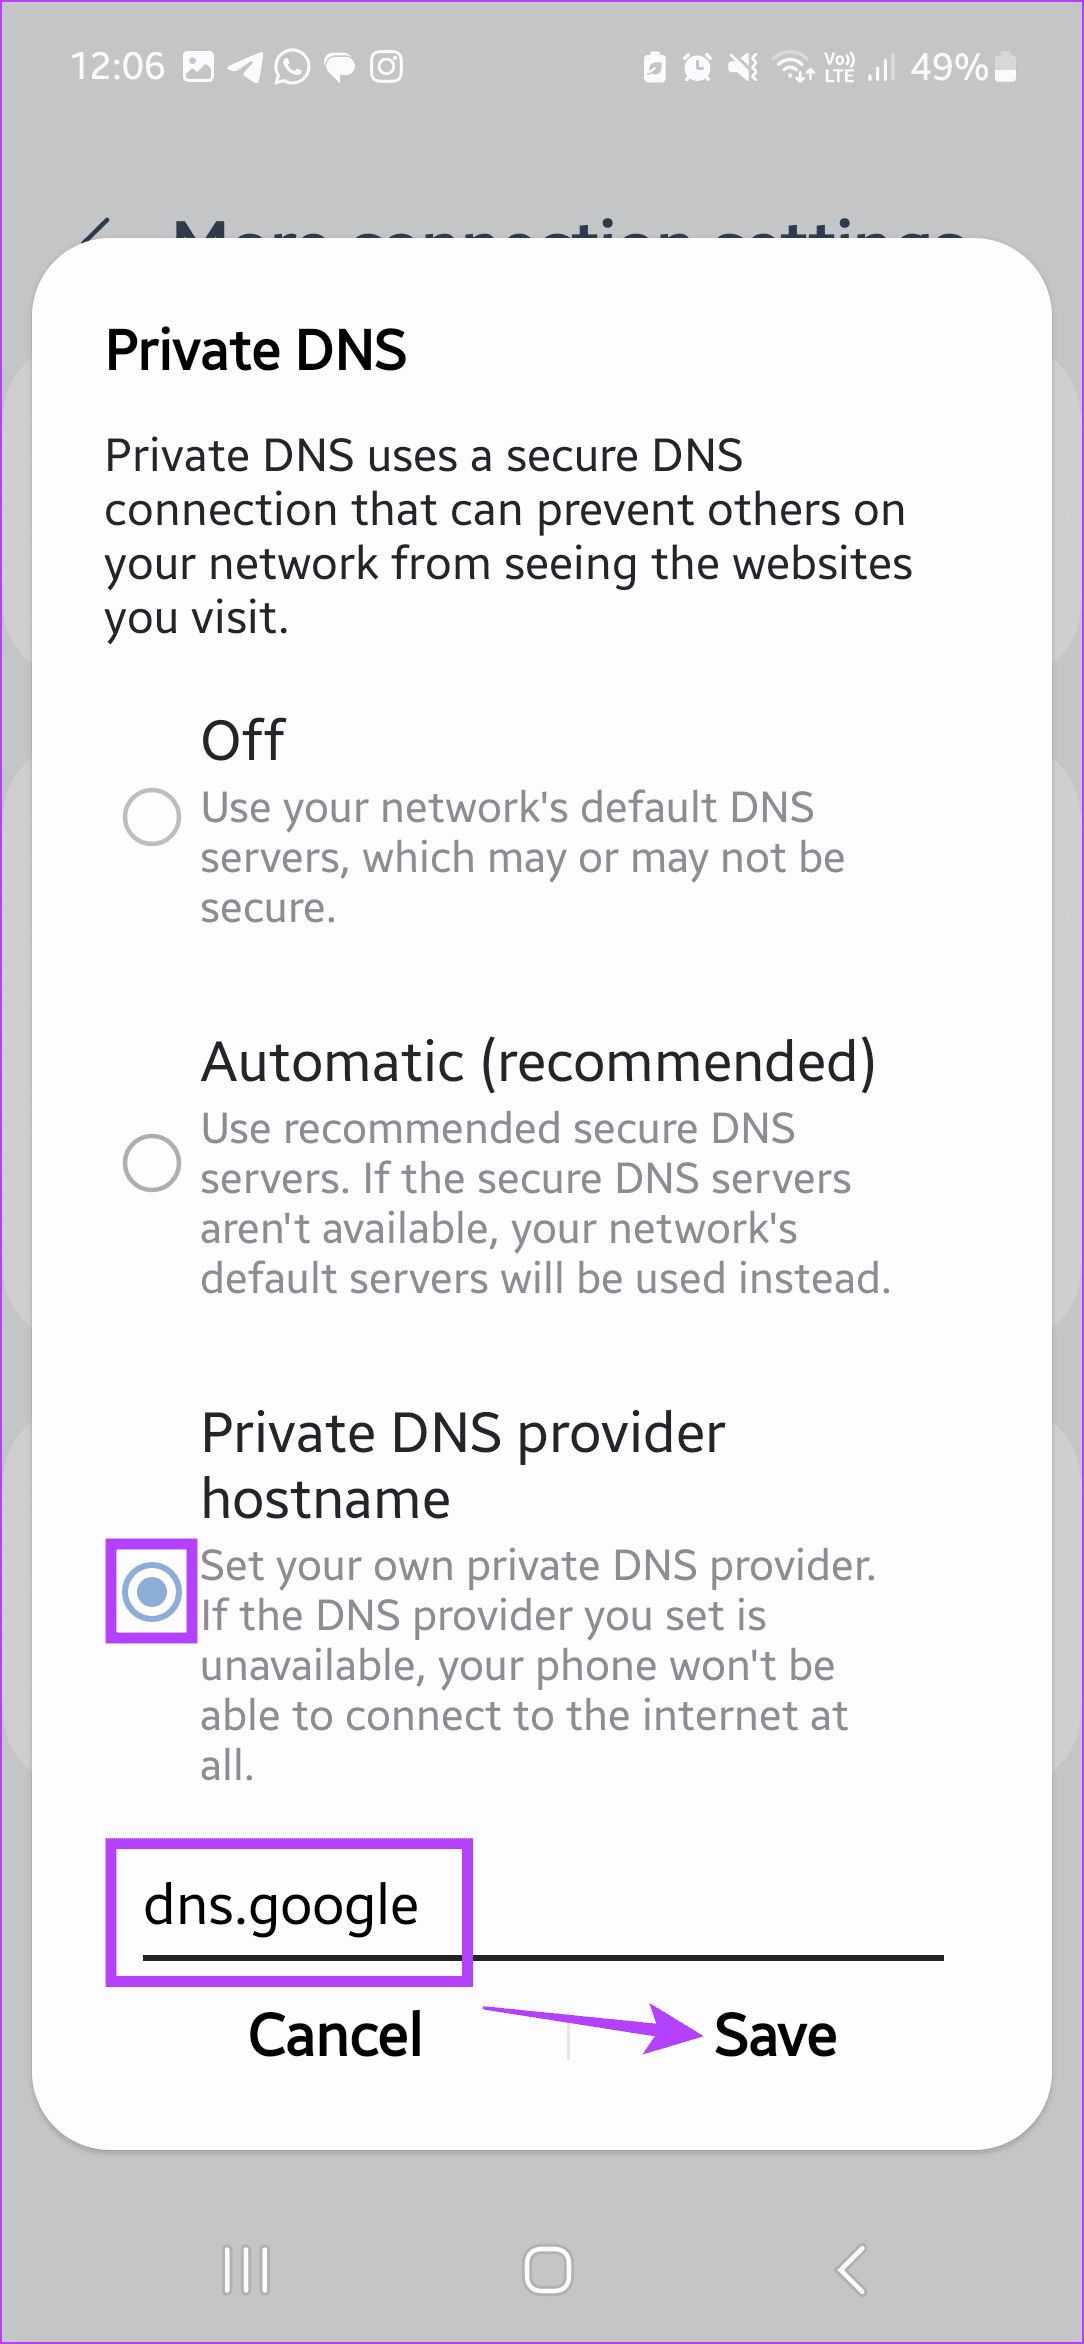 Enter DNS details